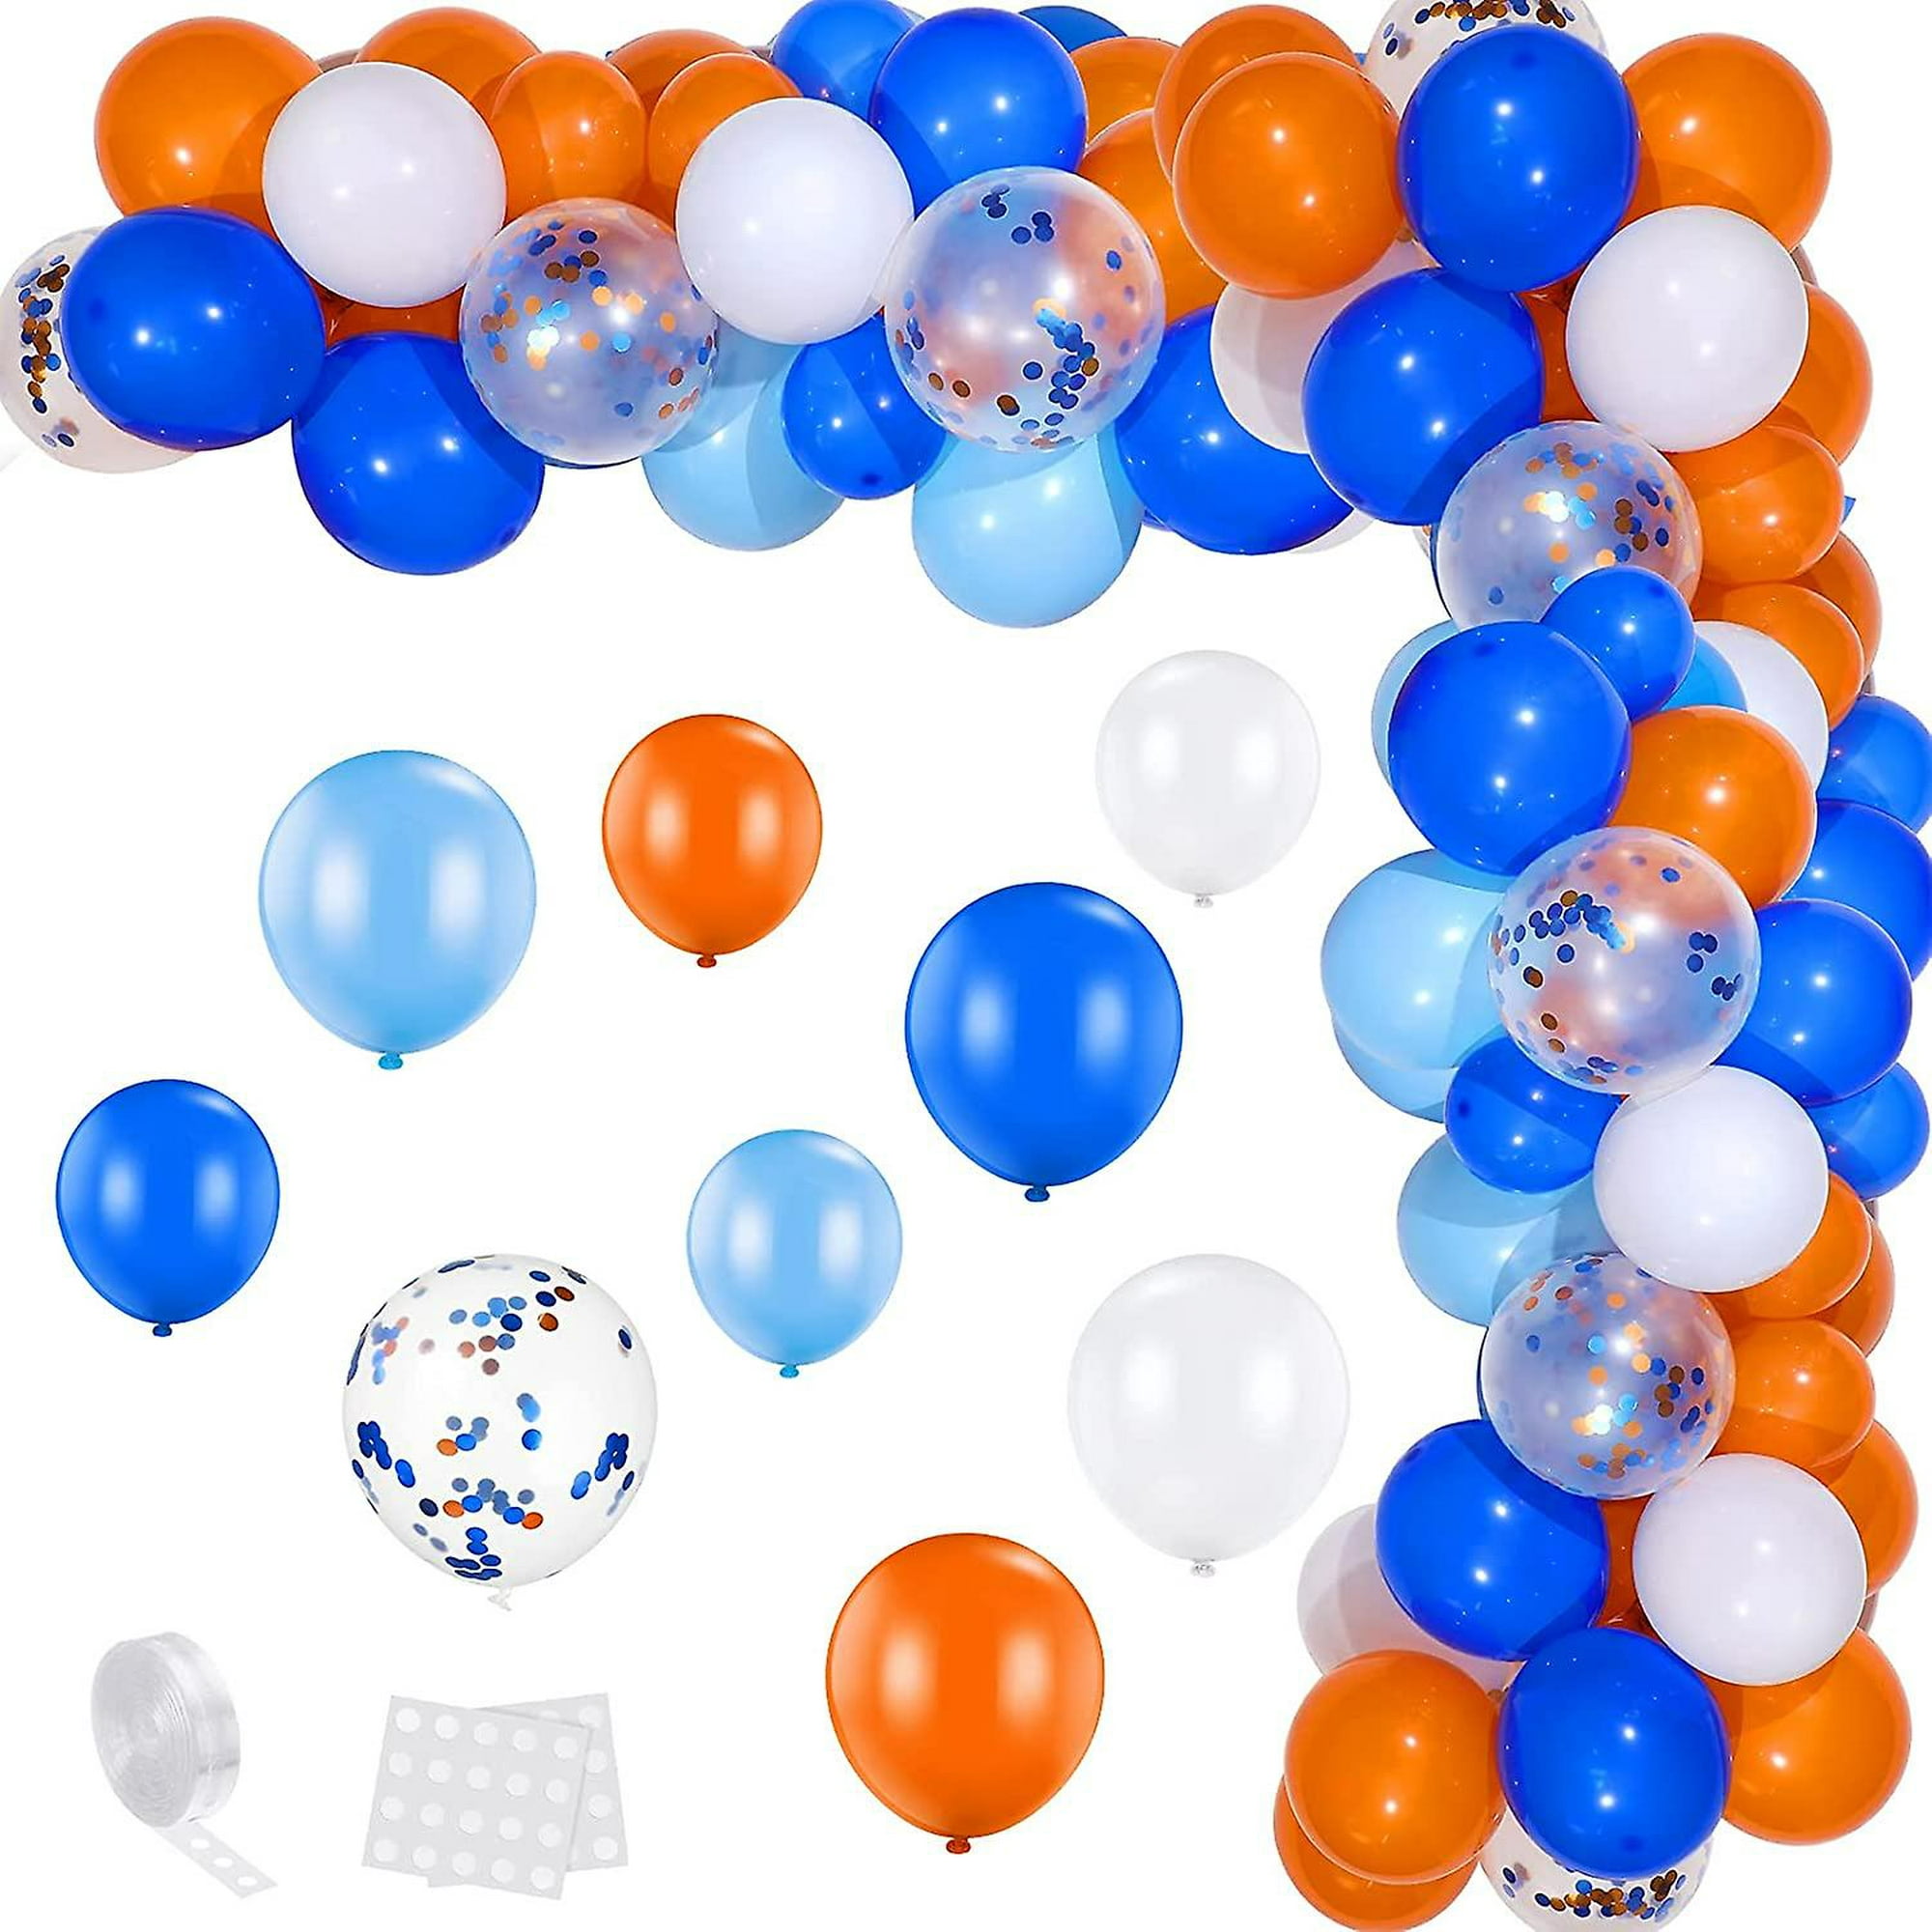 Globos azules y blancos, juego de 60 globos de color azul oscuro y blanco  con globos de confeti, globos de látex azul claro de 12 pulgadas